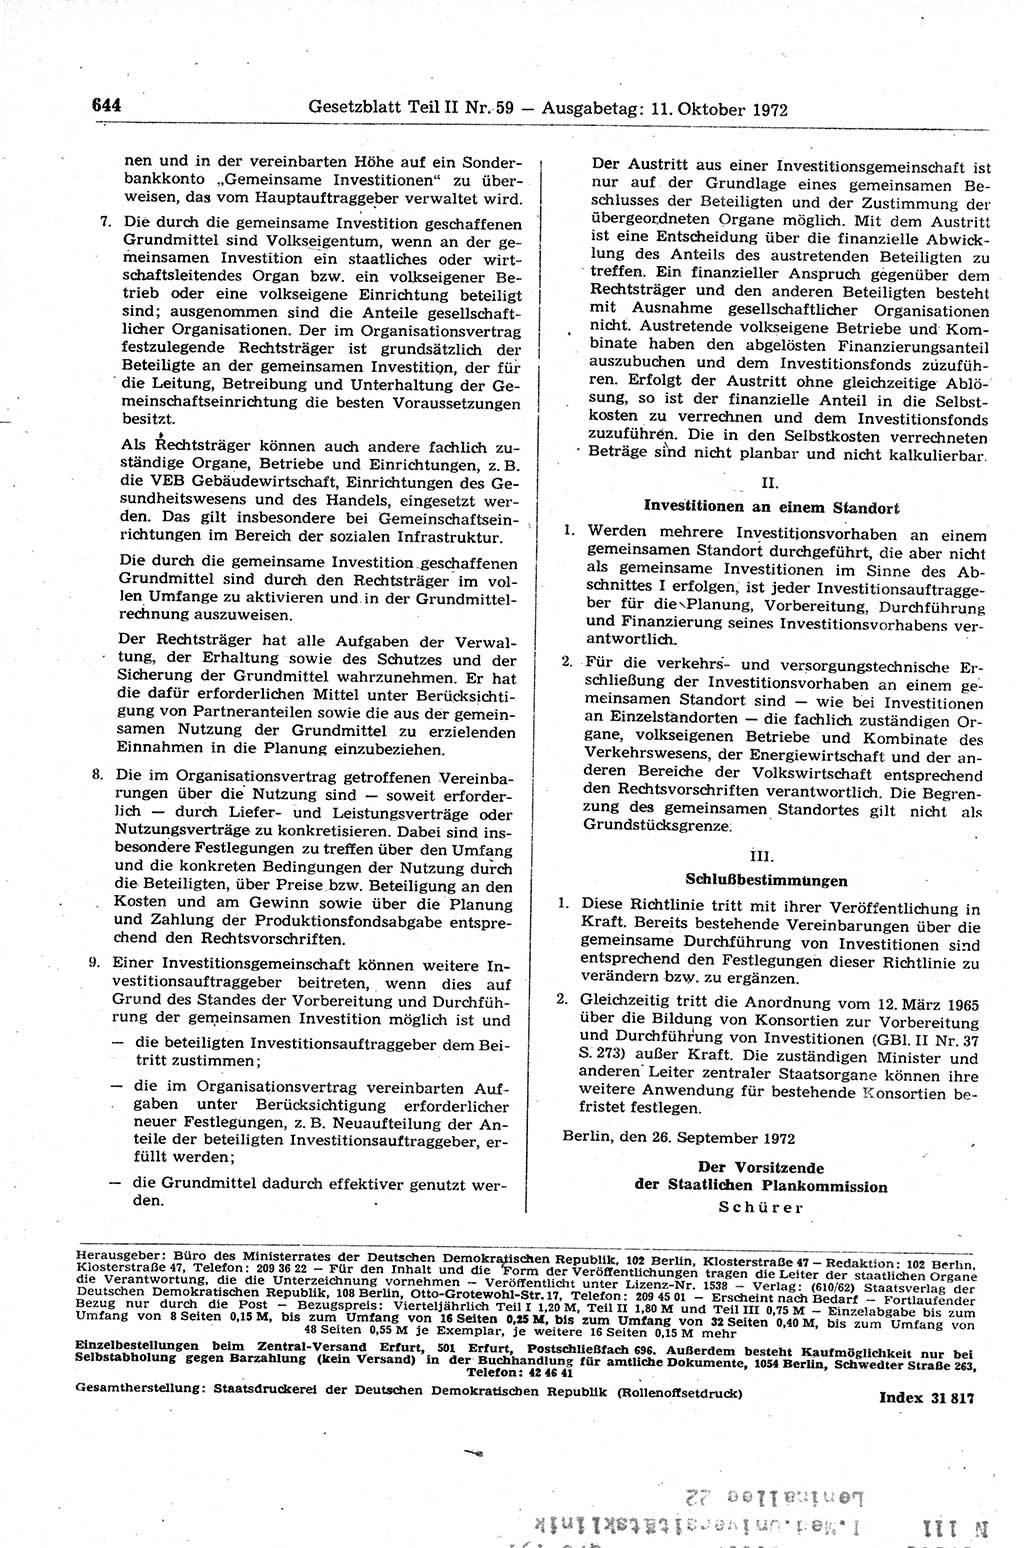 Gesetzblatt (GBl.) der Deutschen Demokratischen Republik (DDR) Teil ⅠⅠ 1972, Seite 644 (GBl. DDR ⅠⅠ 1972, S. 644)